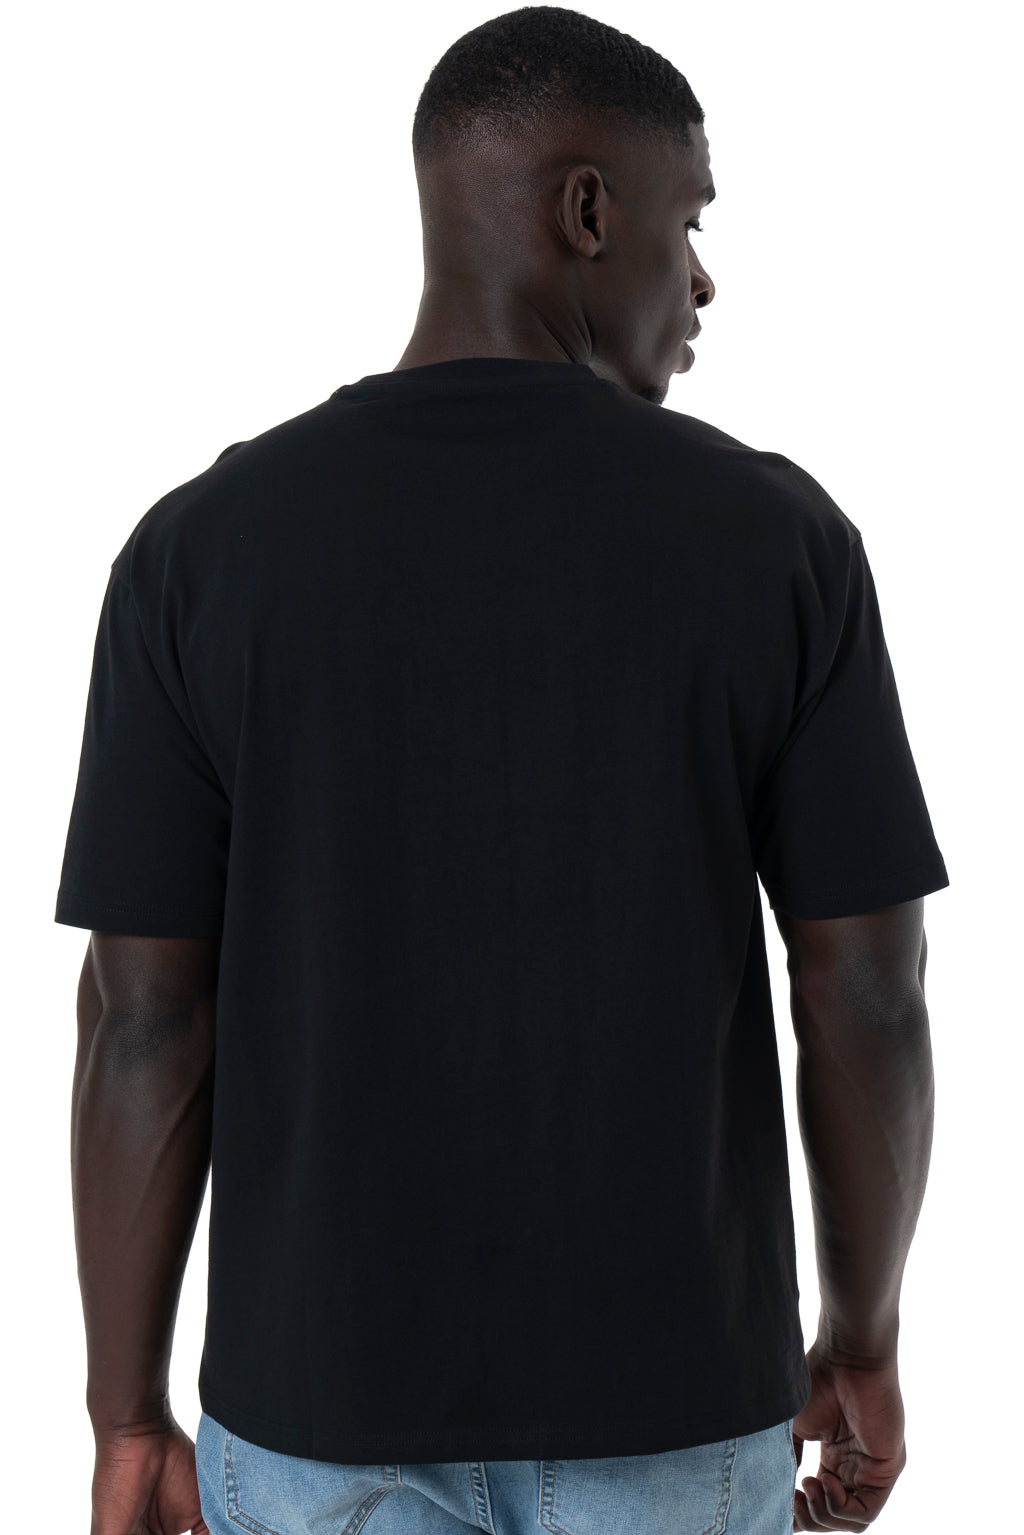 Fashion T-Shirt _ 142926 _ Black